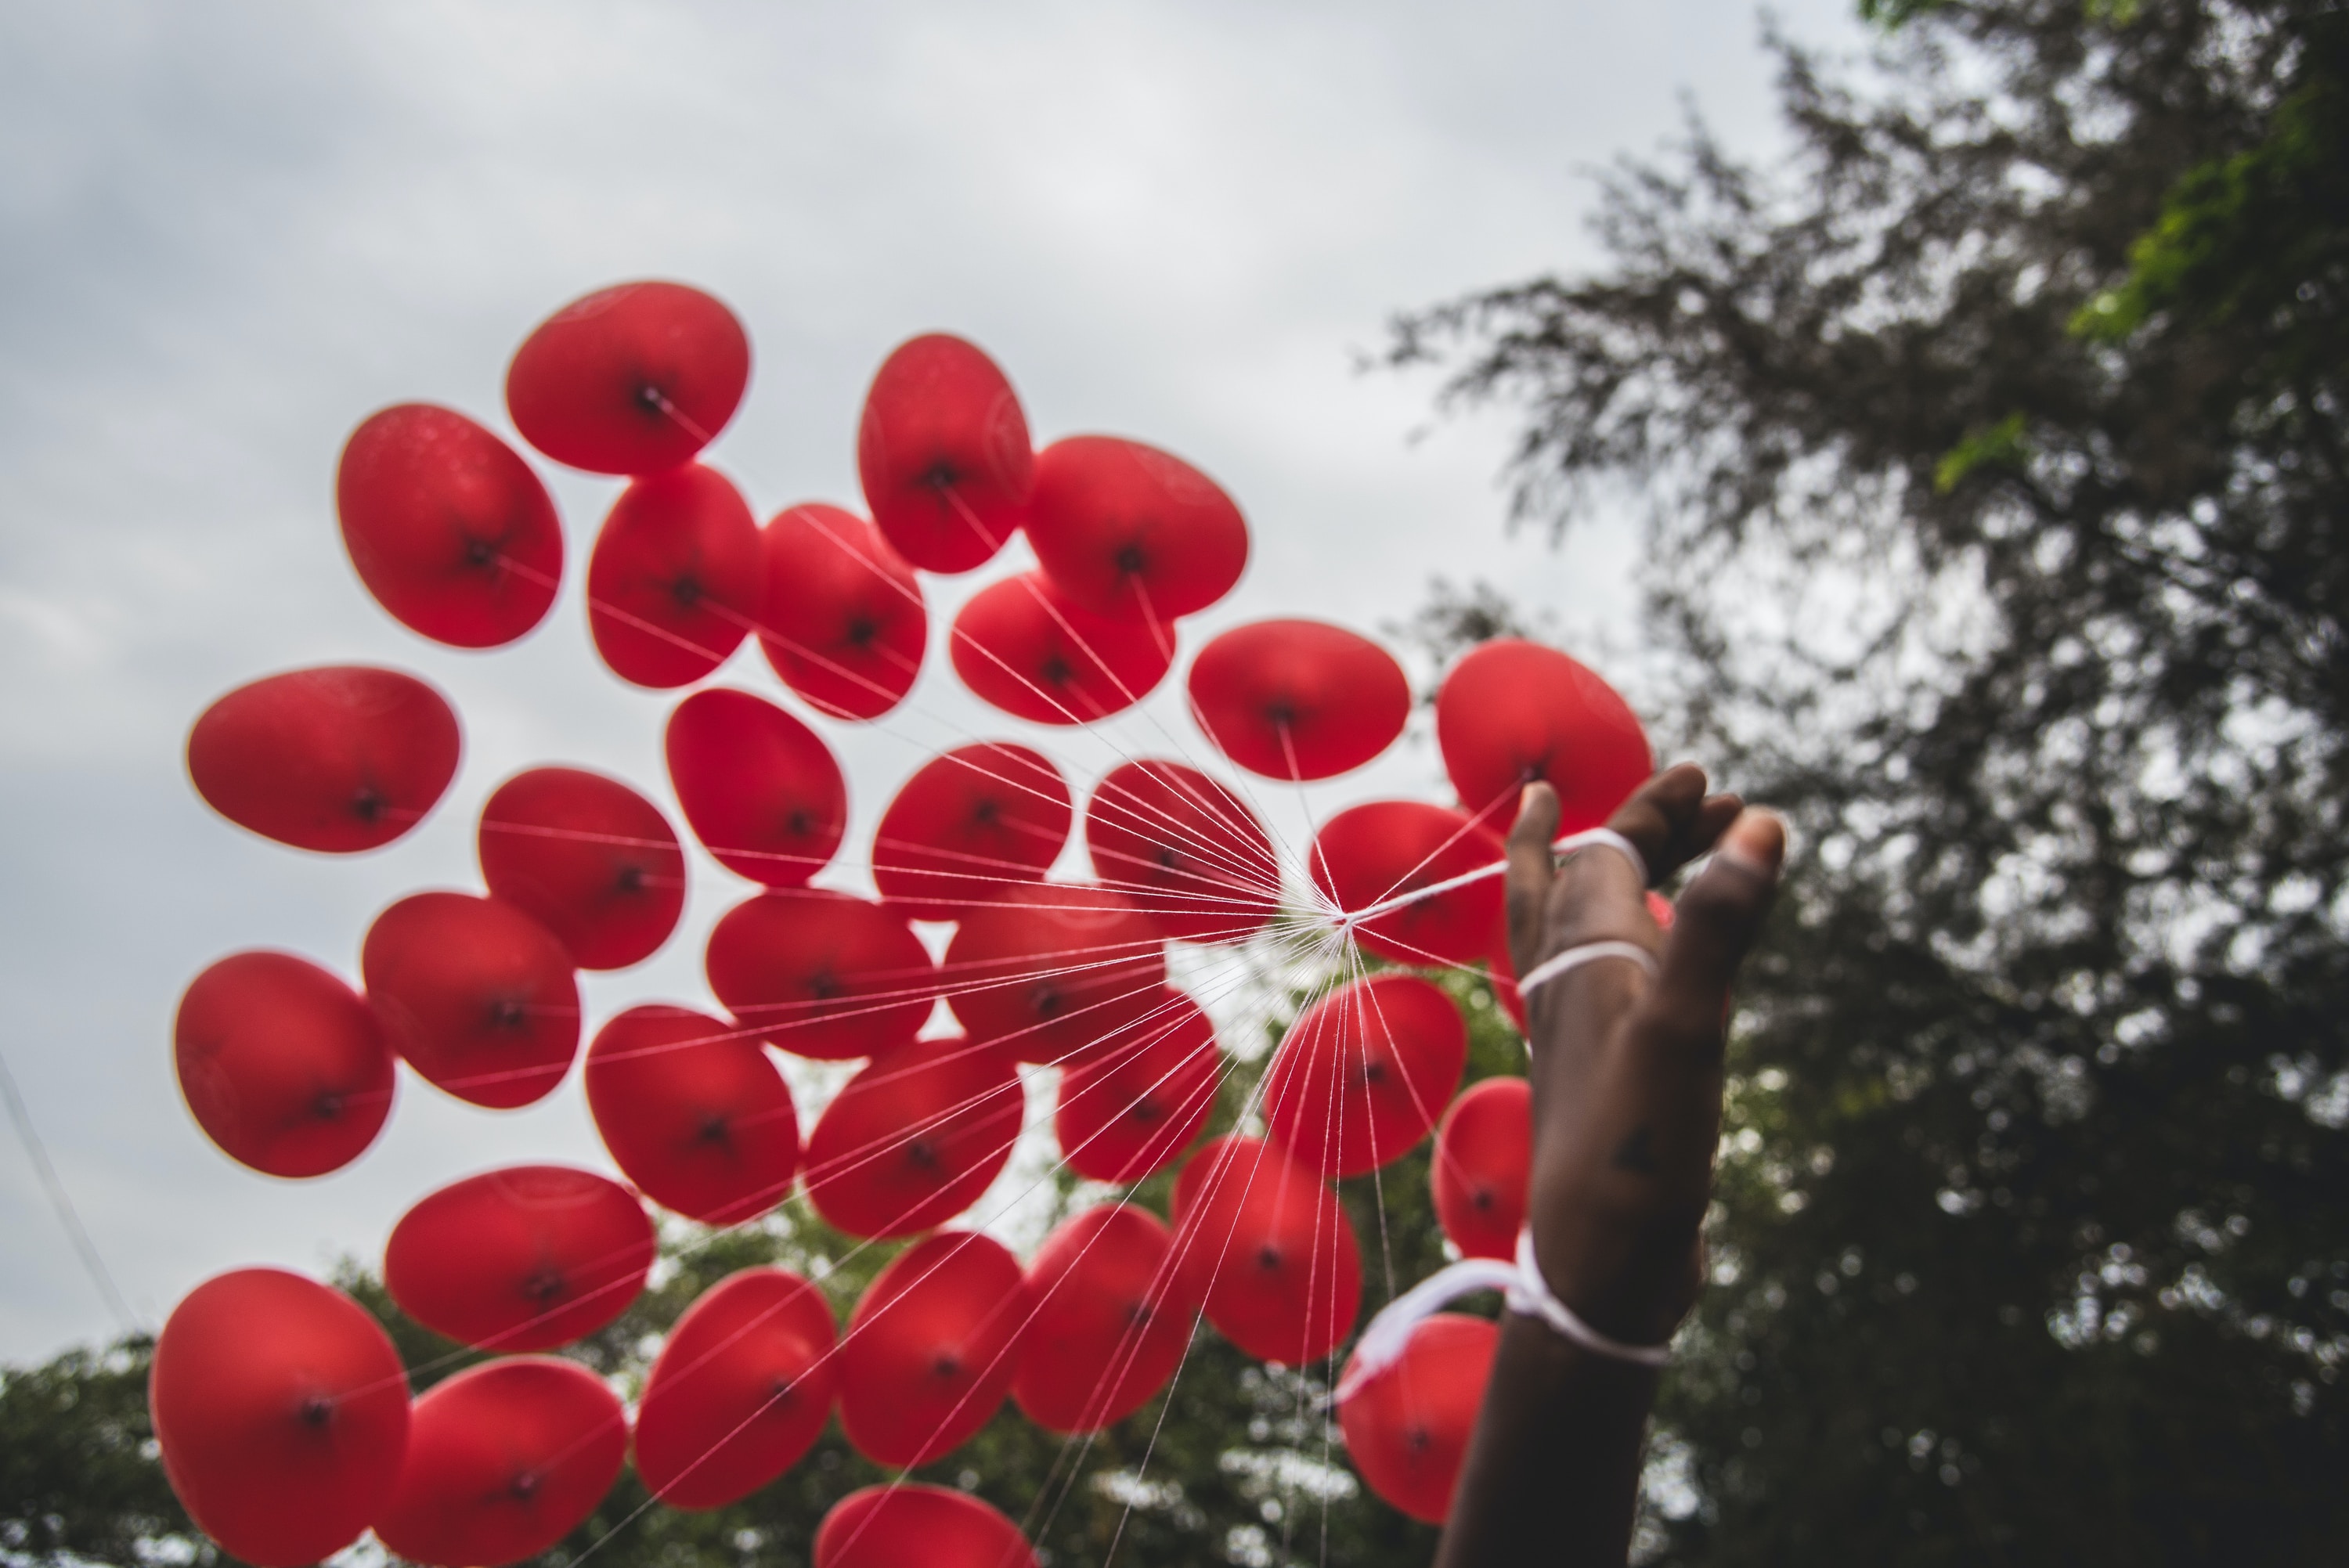 Eine Person hält einen Haufen roter Luftballons in der Hand.